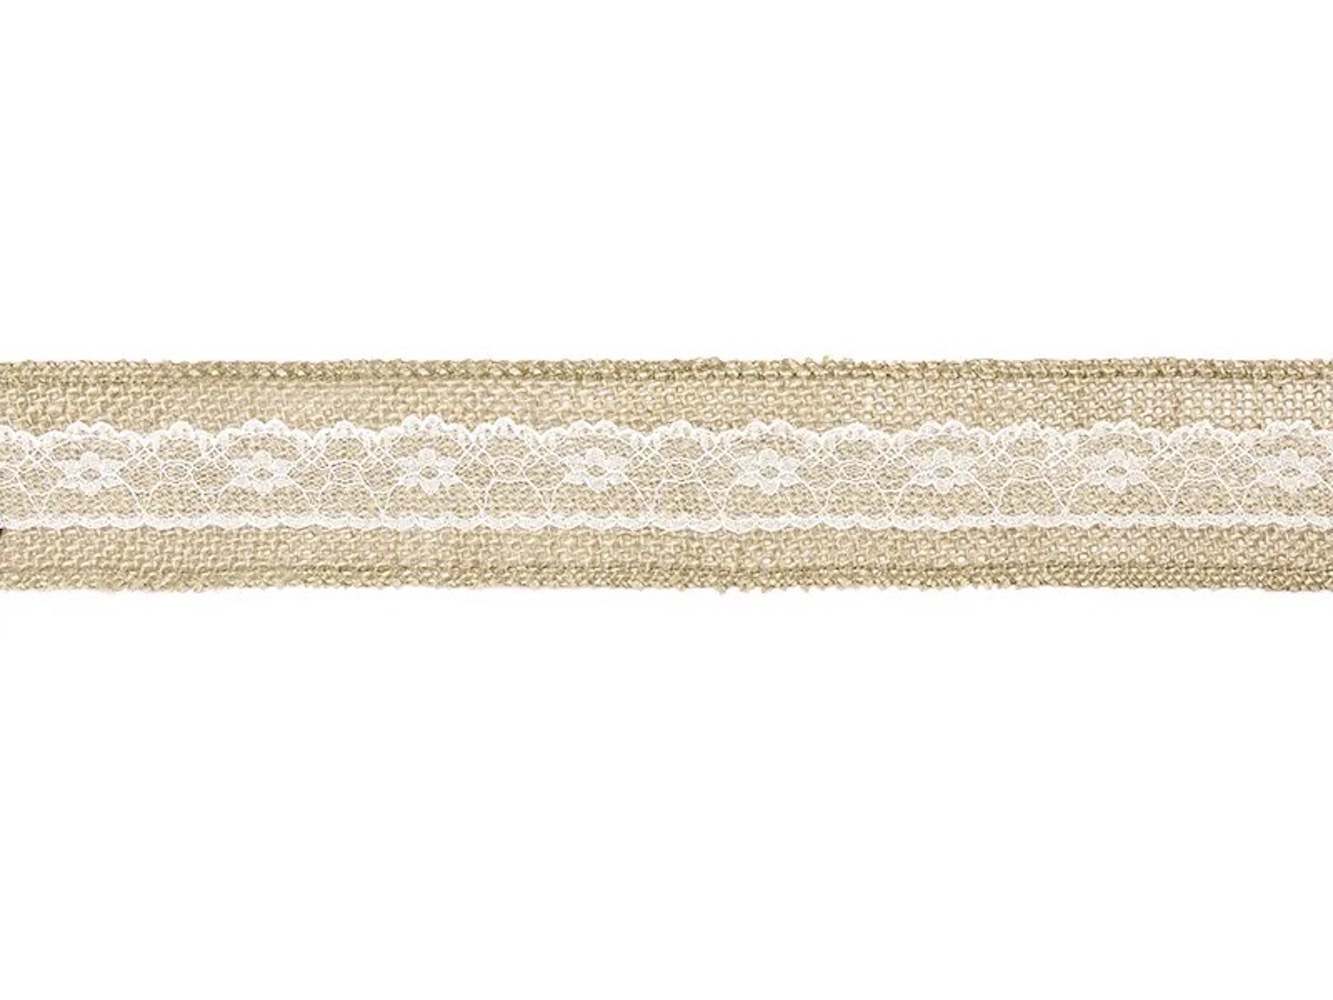 Juteband mit weißer Spitze in der Mitte schmal, Breite ca. 5 cm, Länge ca. 5 m